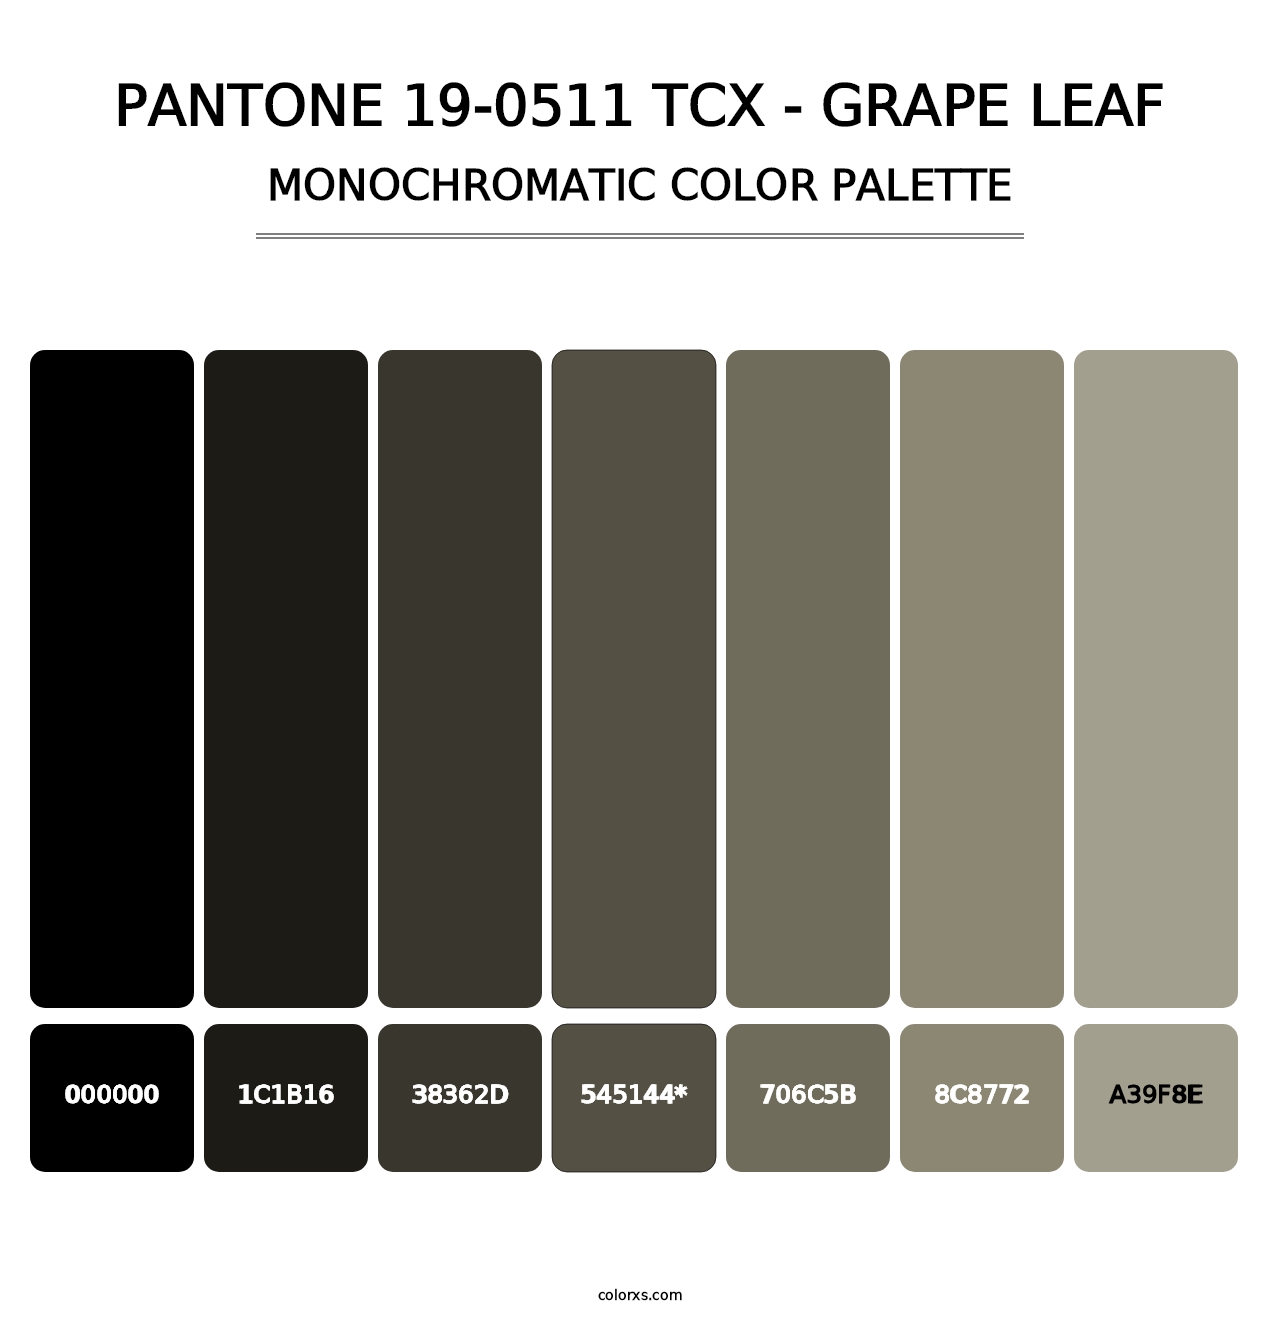 PANTONE 19-0511 TCX - Grape Leaf - Monochromatic Color Palette